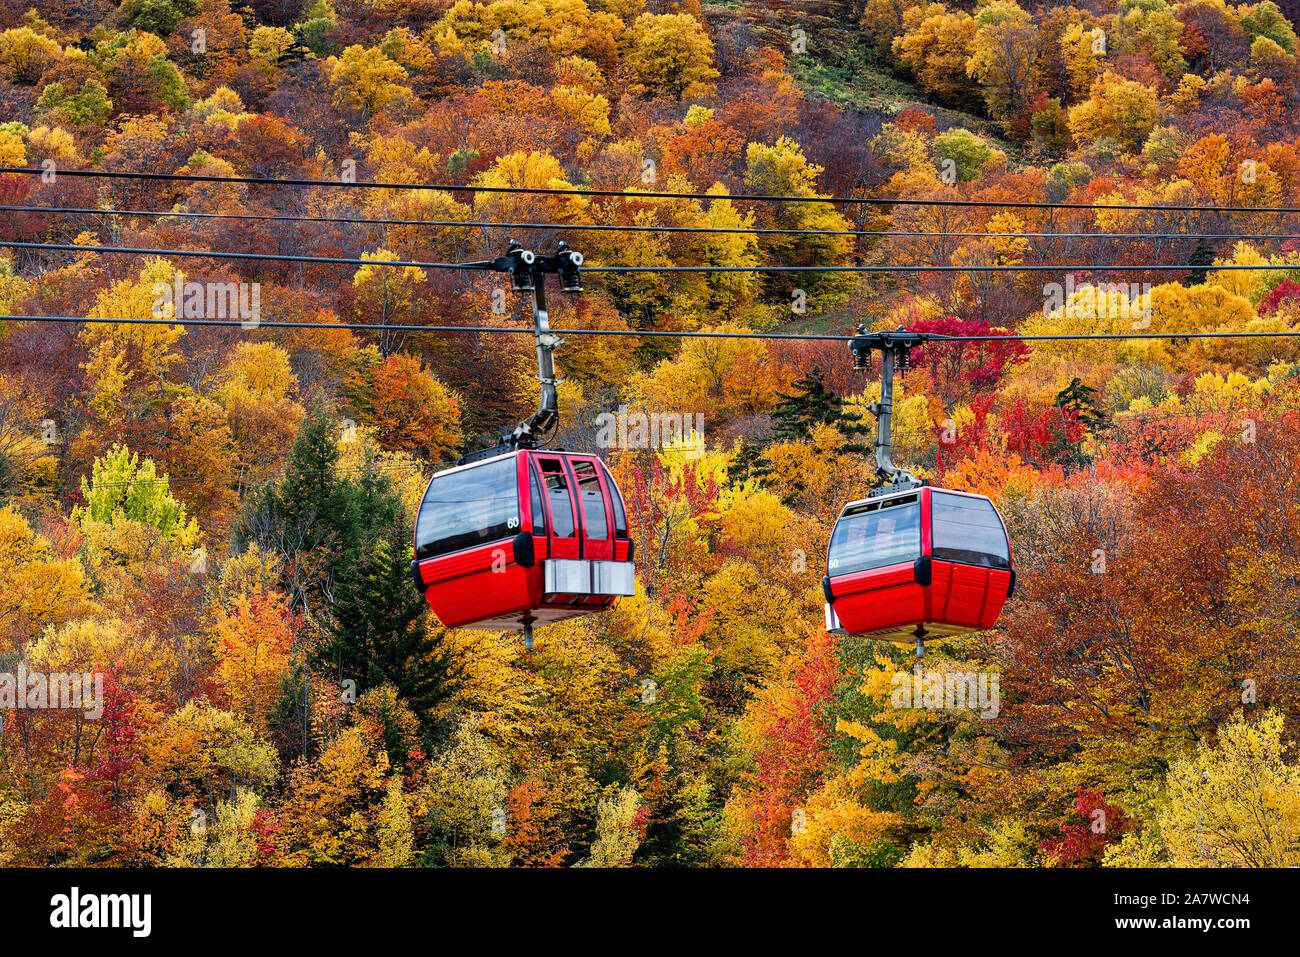 Autumn gondola sightseeing excursion at Stowe Mountain, Vermont, USA. Stock Photo